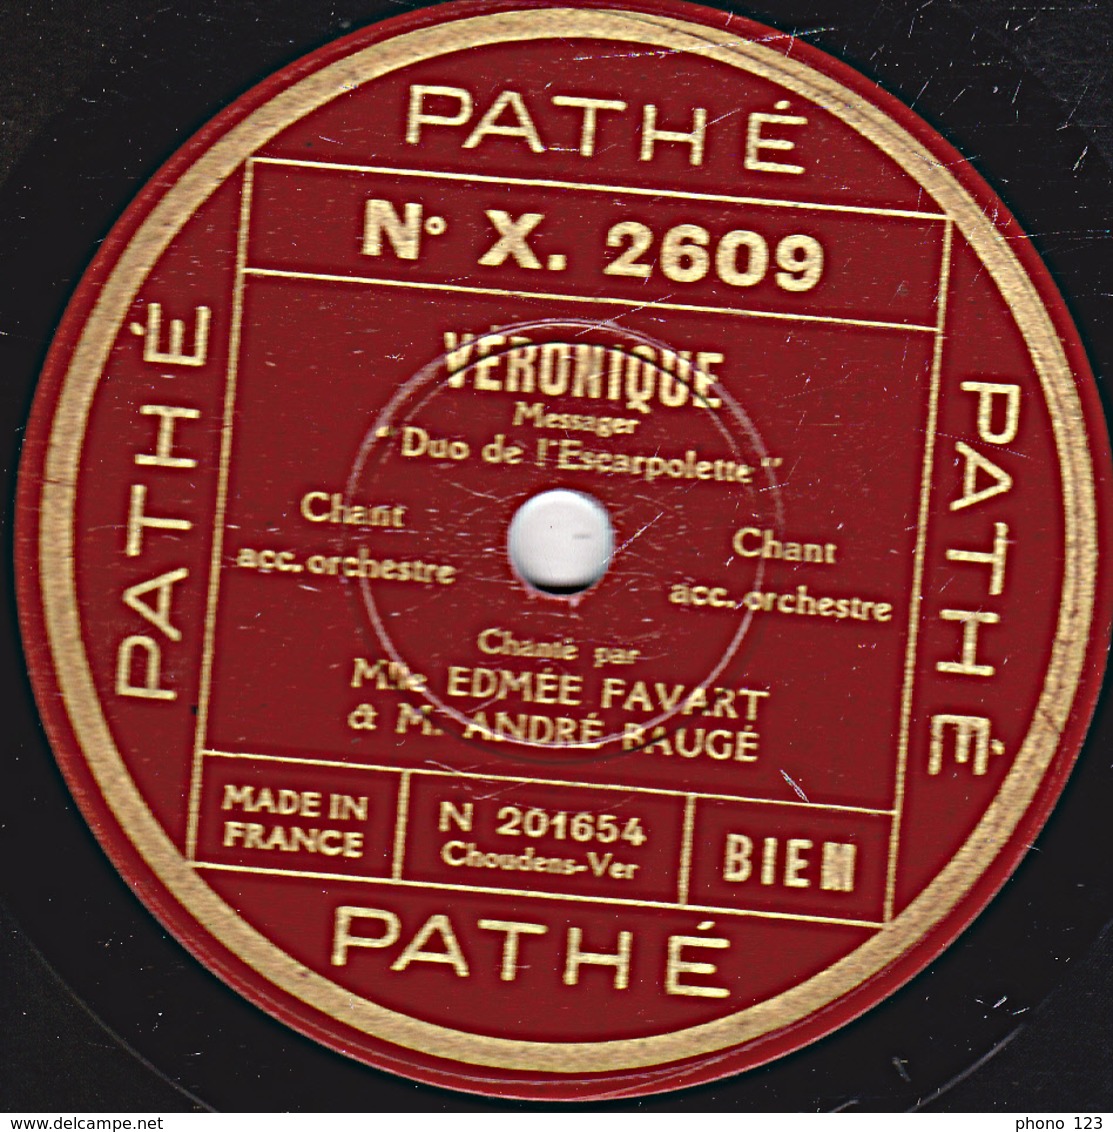 78 Trs  25 Cm  état TB  Edmée FAVART Et ANDRE BAUGE - VERONIQUE "Duo De L'Escarpelette" "Duetto De L'Ane" - 78 Rpm - Gramophone Records